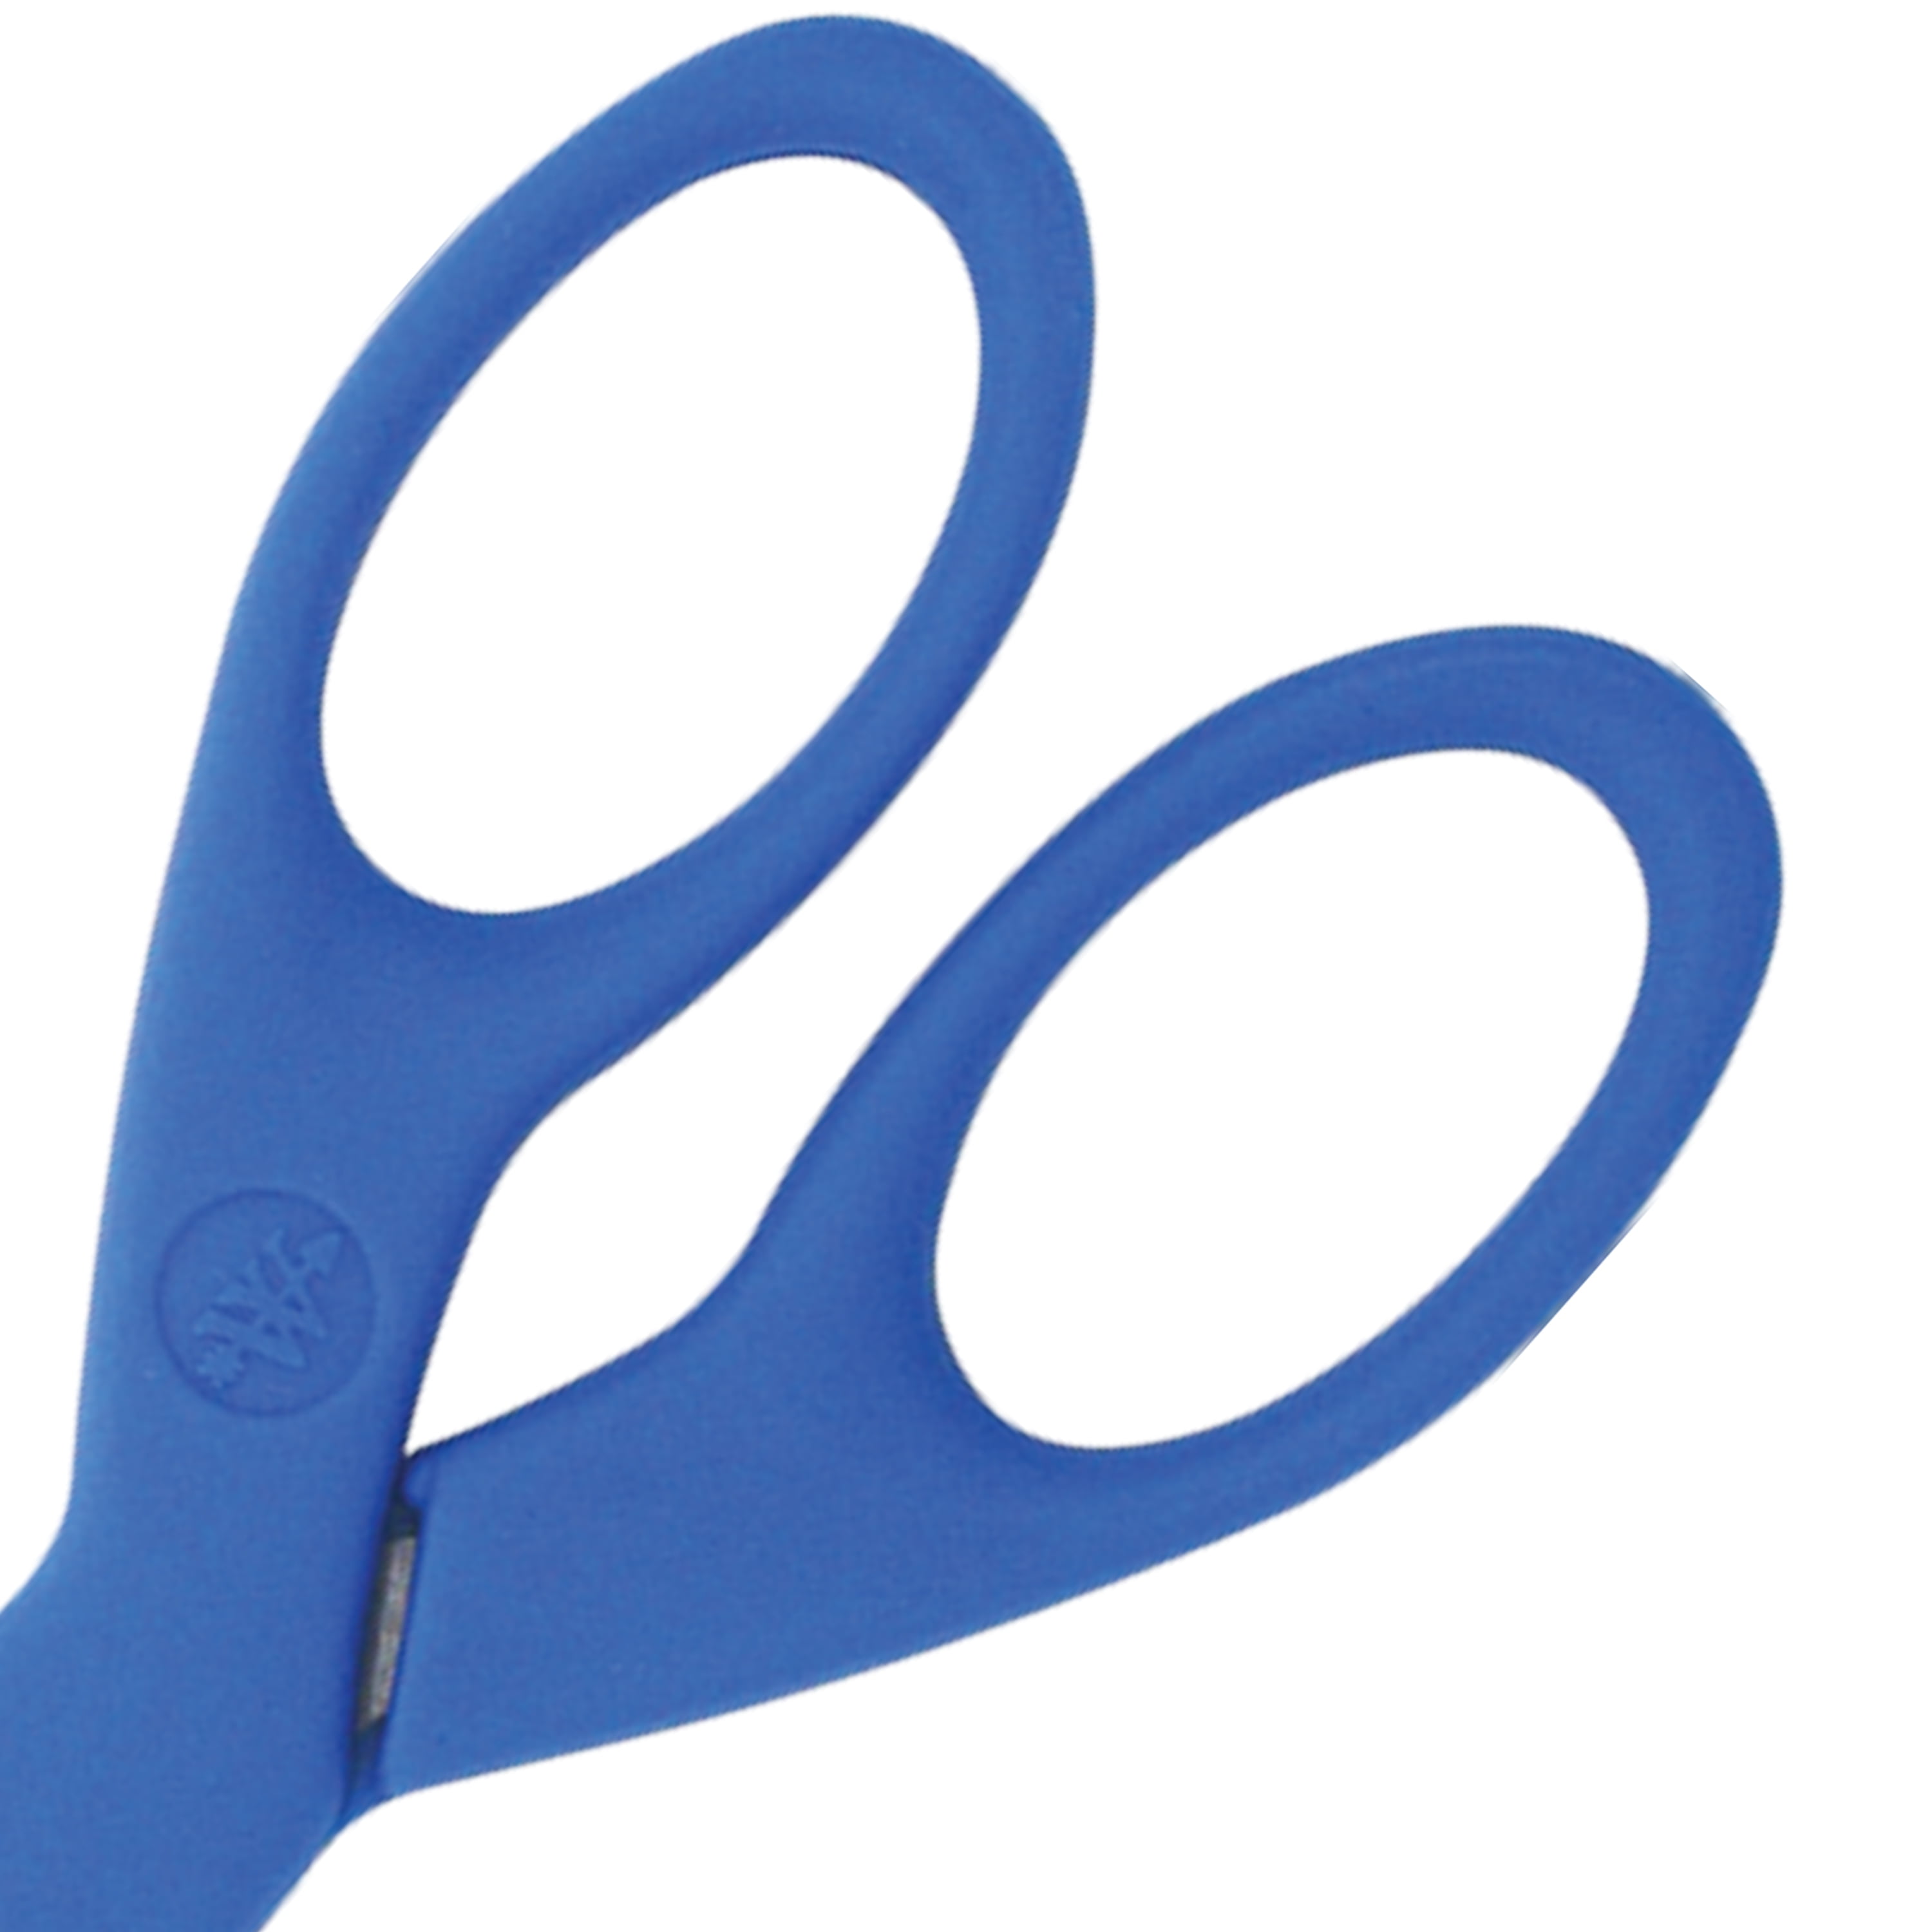 Westcott - Westcott All Purpose Preferred Stainless Steel Scissors, 5,  Blue (44216)